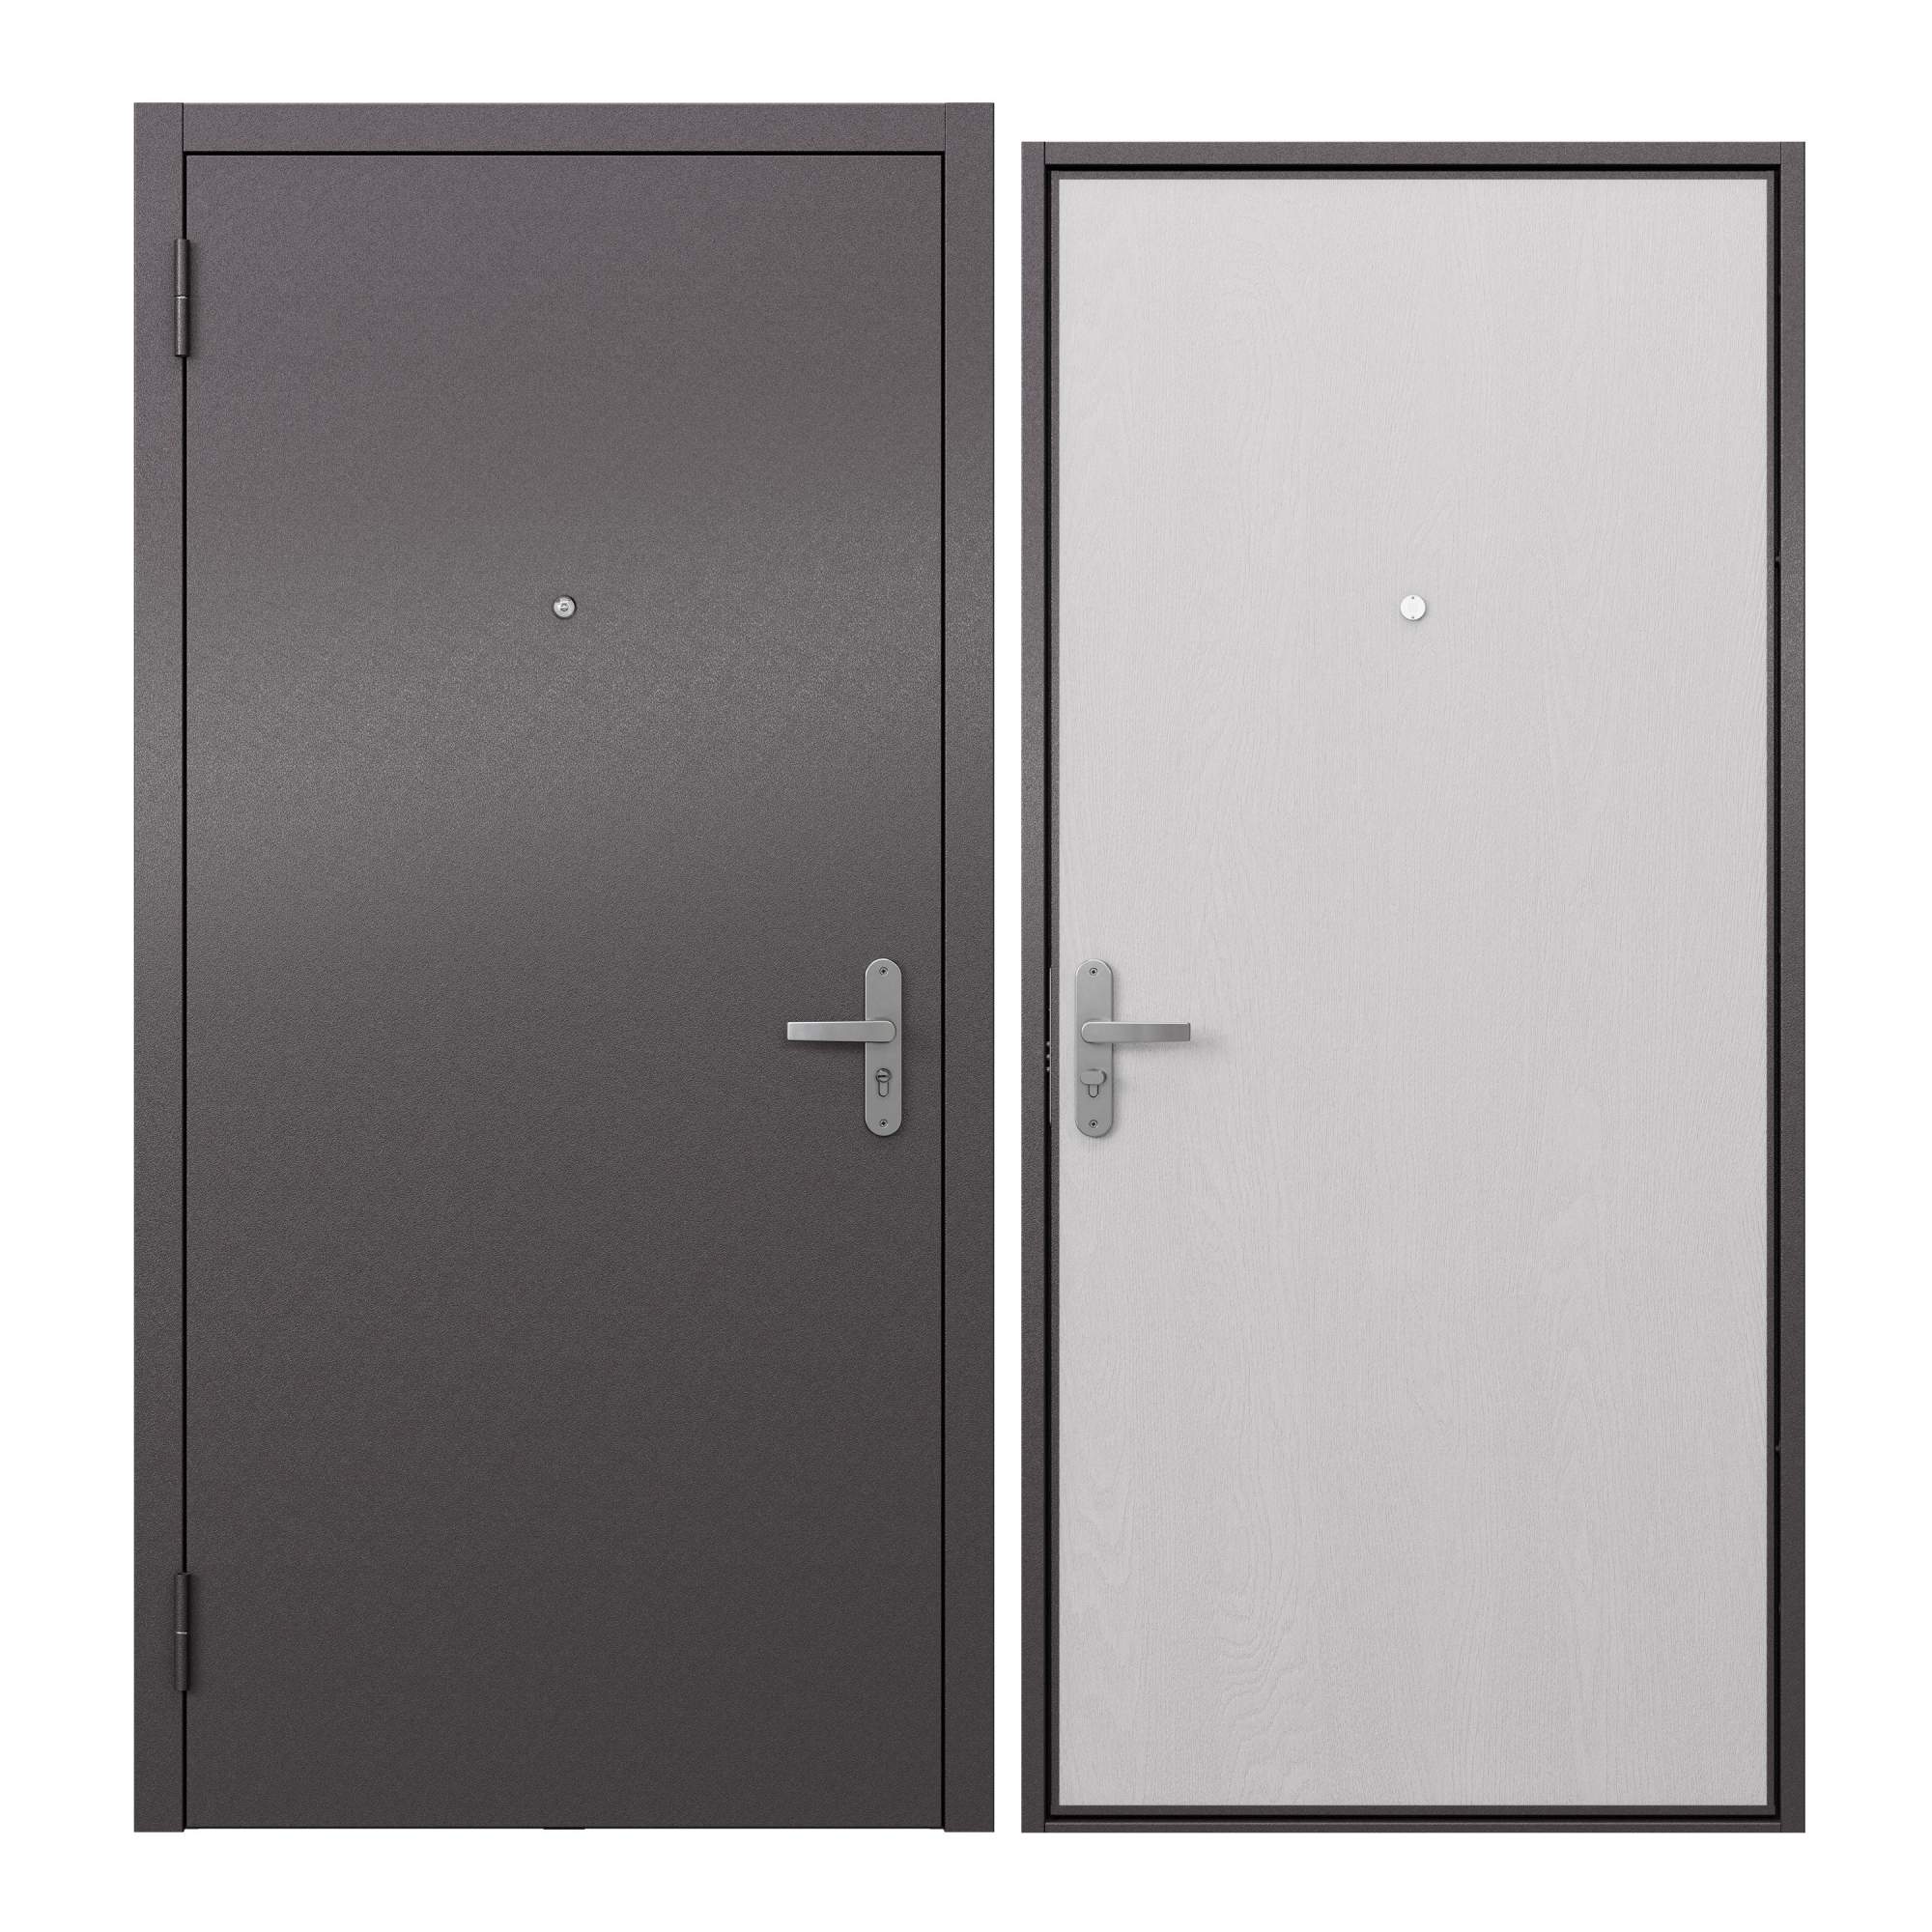 Дверь входная металлическая Proline для квартиры Terminal A 860х2050, левая дверь входная дверной континент термаль экстра левая медный антик лиственница белая 860х2050 мм